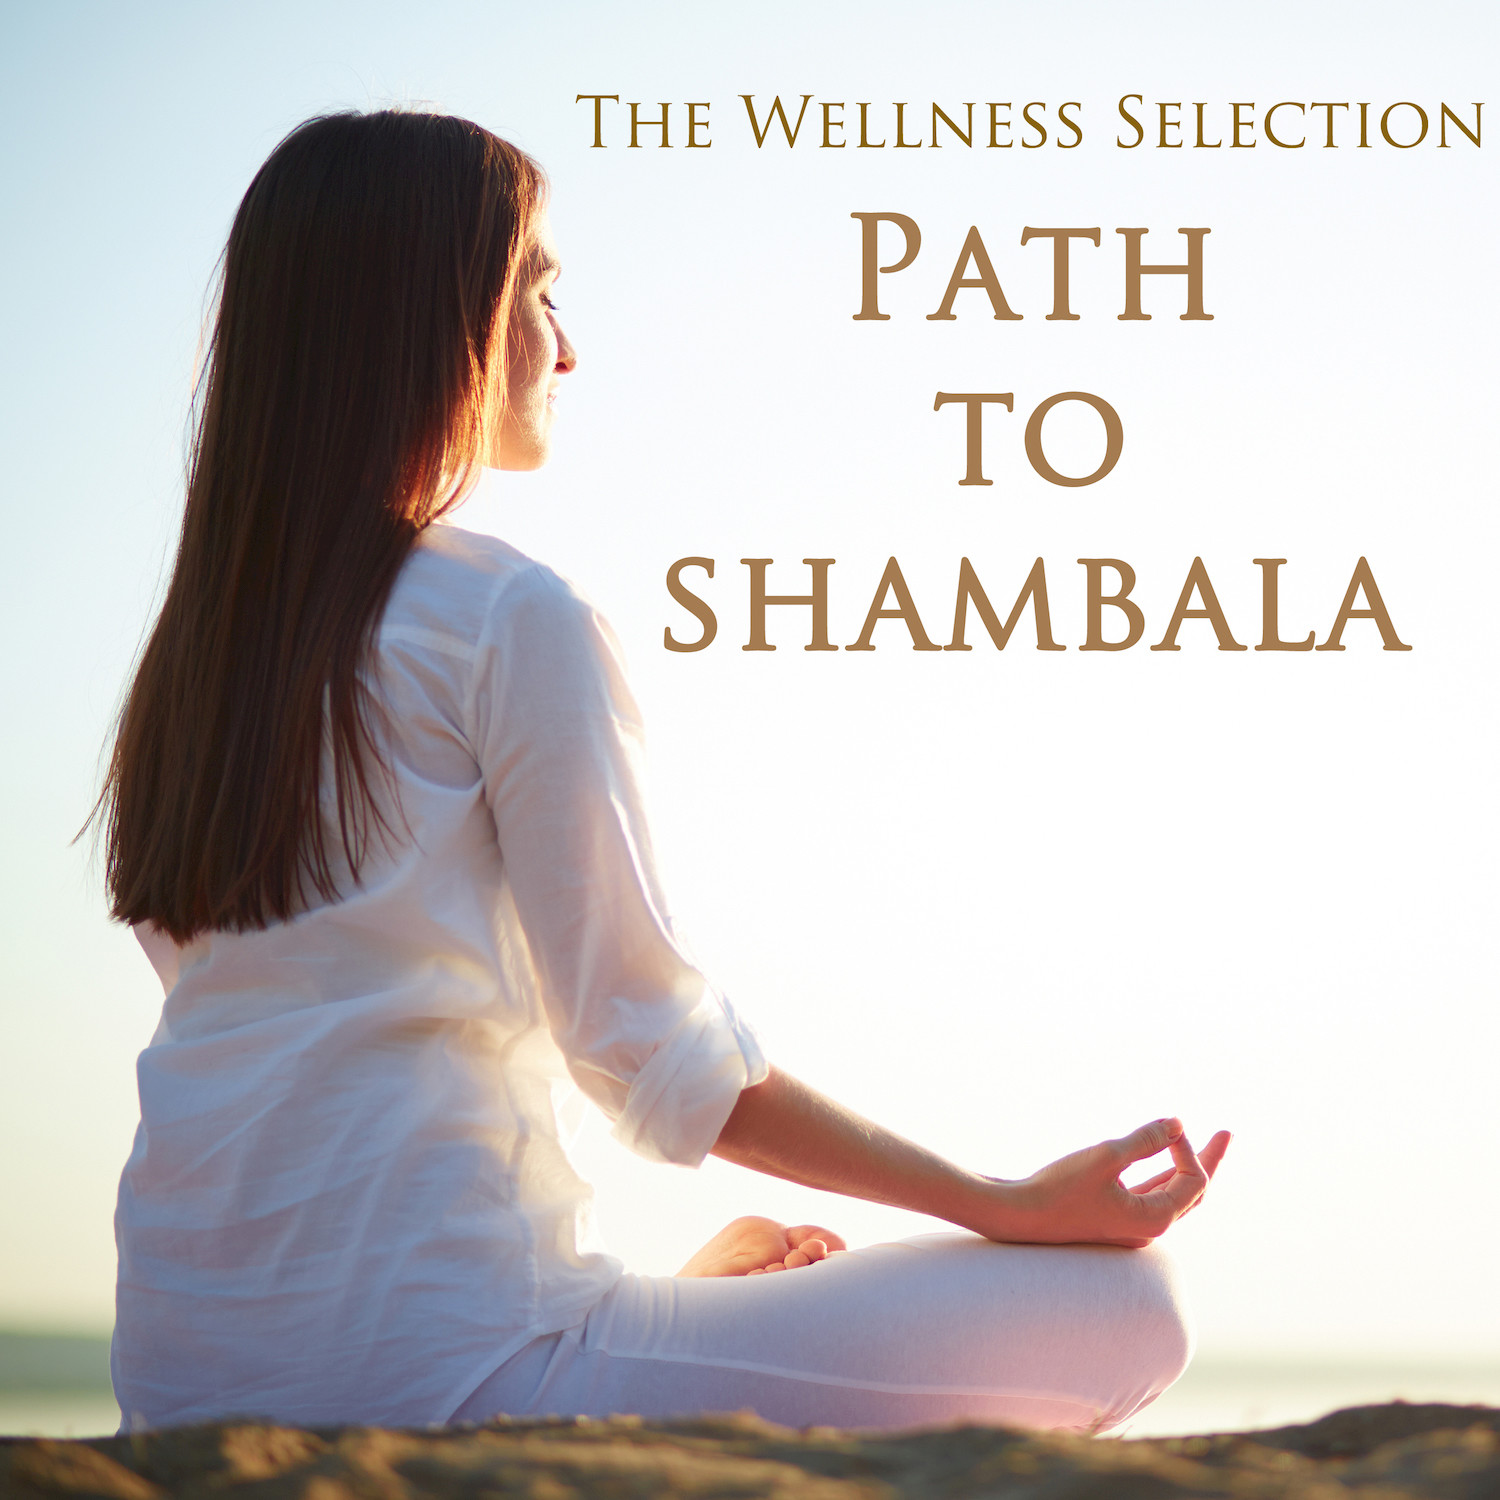 The Path to Shambala